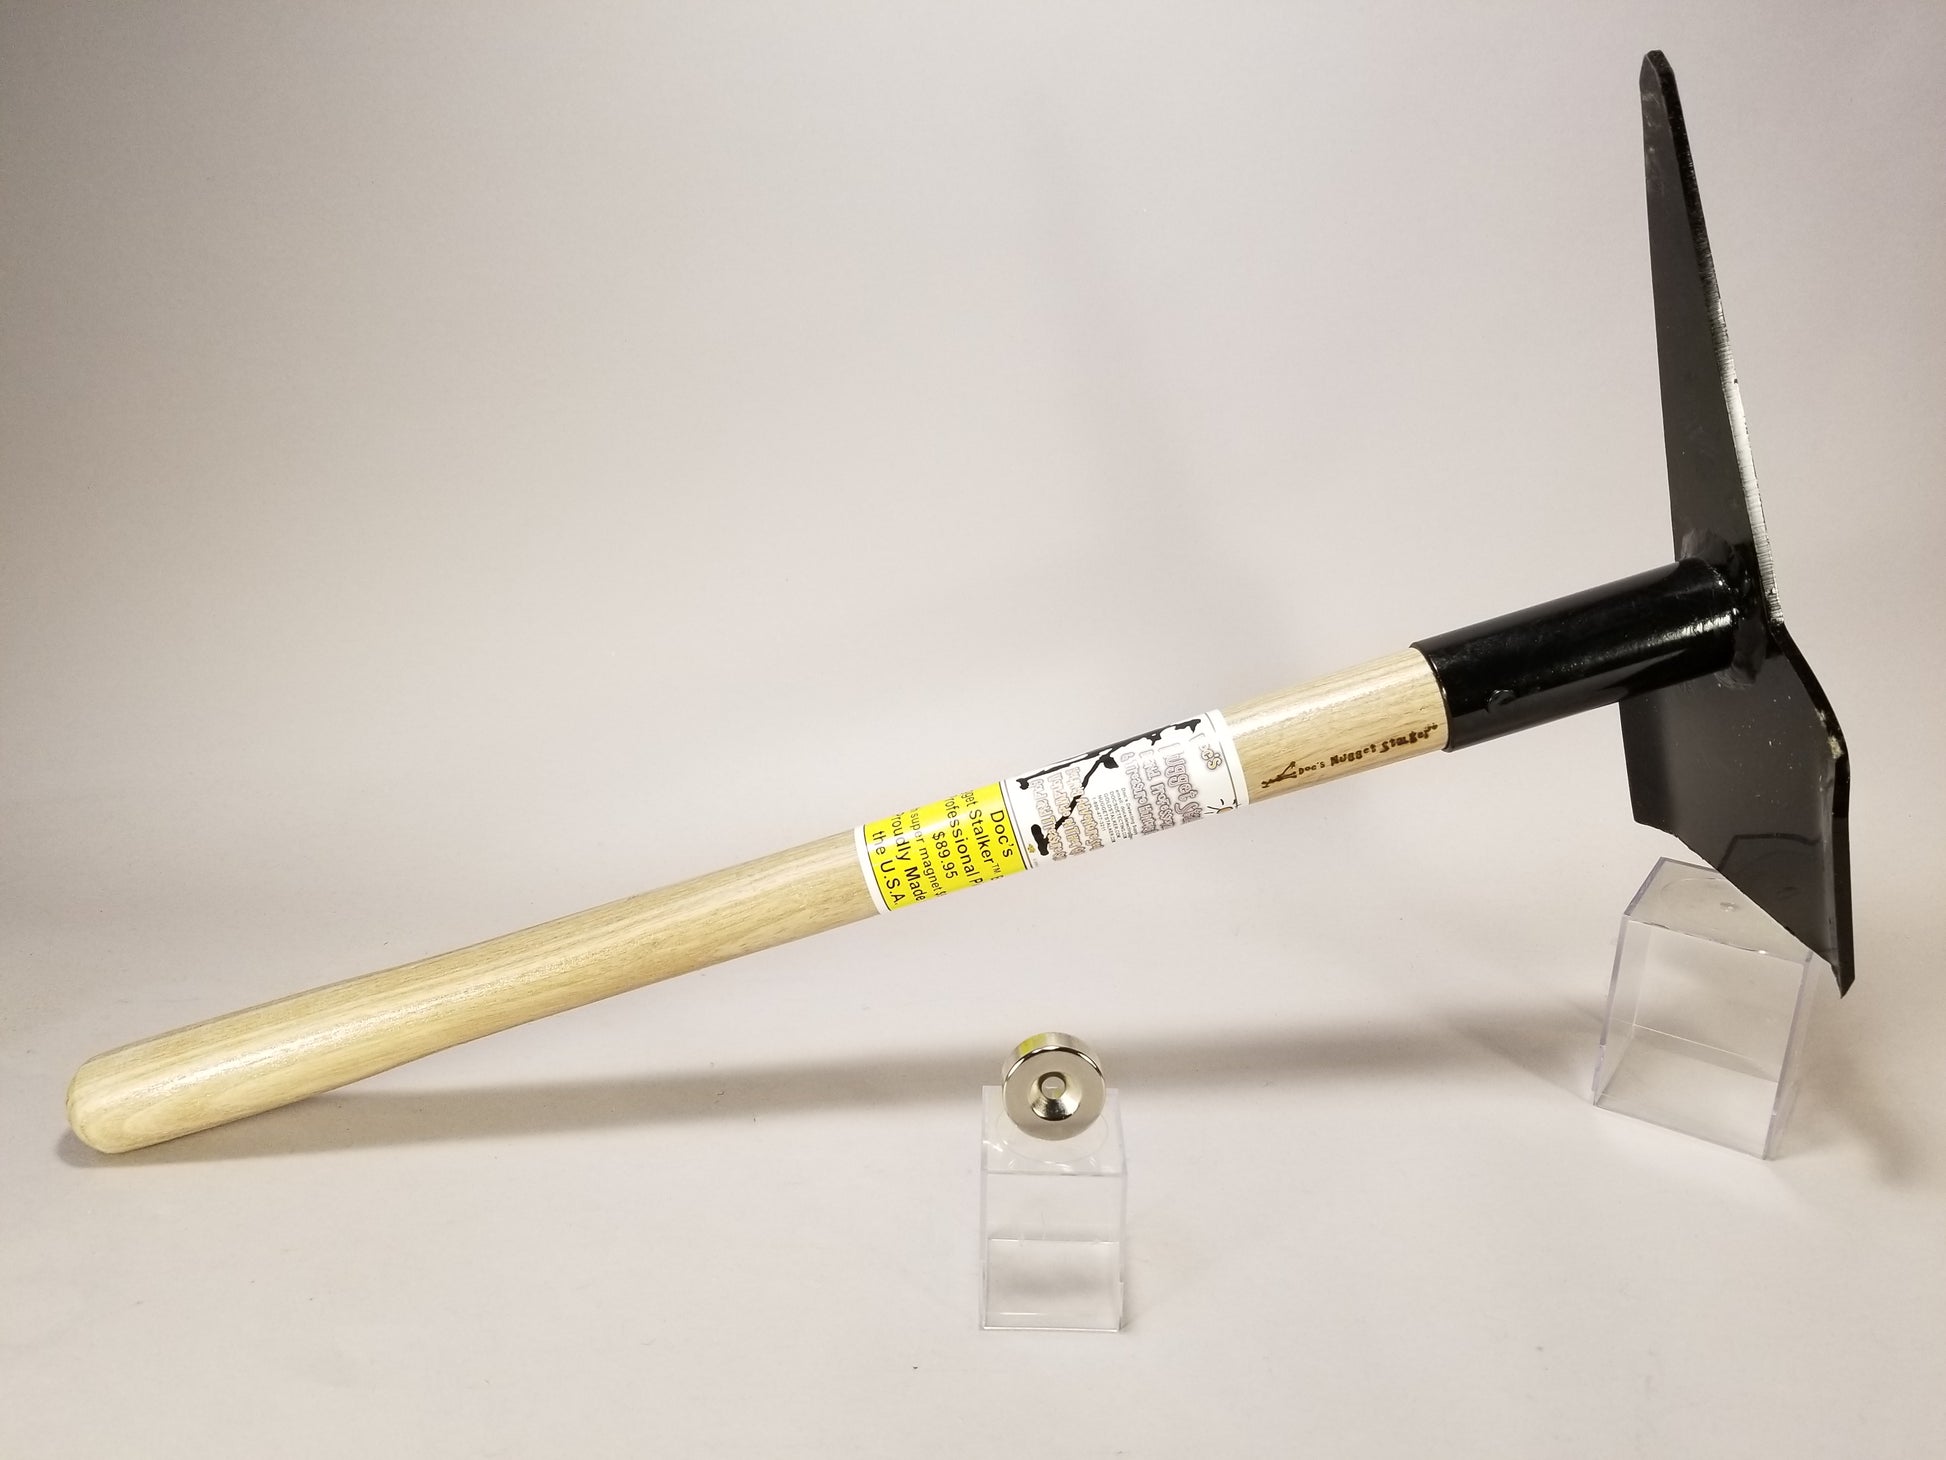 Pick Royal 18-inch Gold Digger Metal detecting digging tool